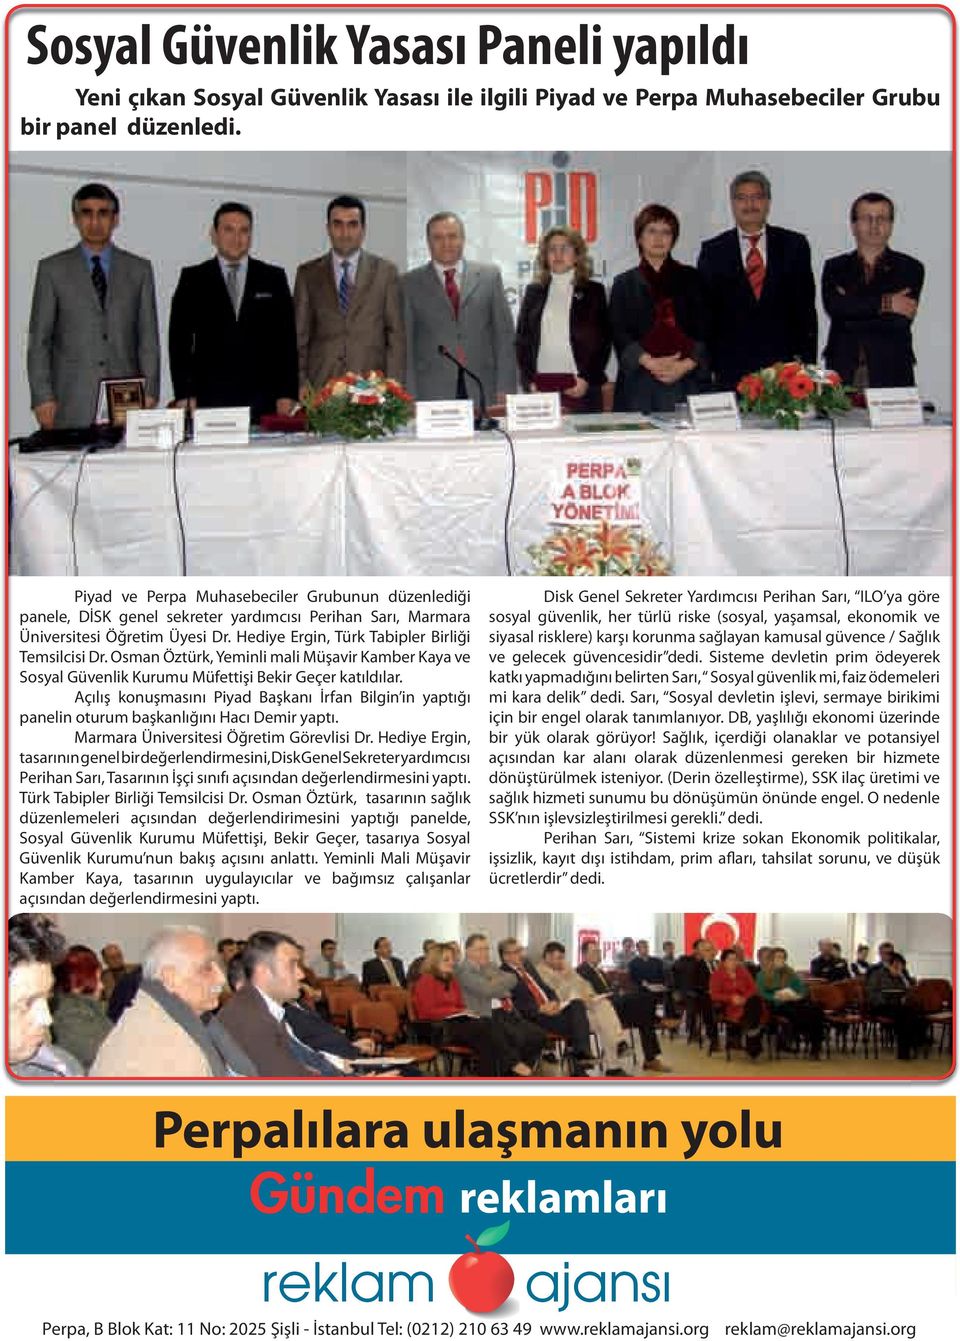 Osman Öztürk, Yeminli mali Müşavir Kamber Kaya ve Sosyal Güvenlik Kurumu Müfettişi Bekir Geçer katıldılar.